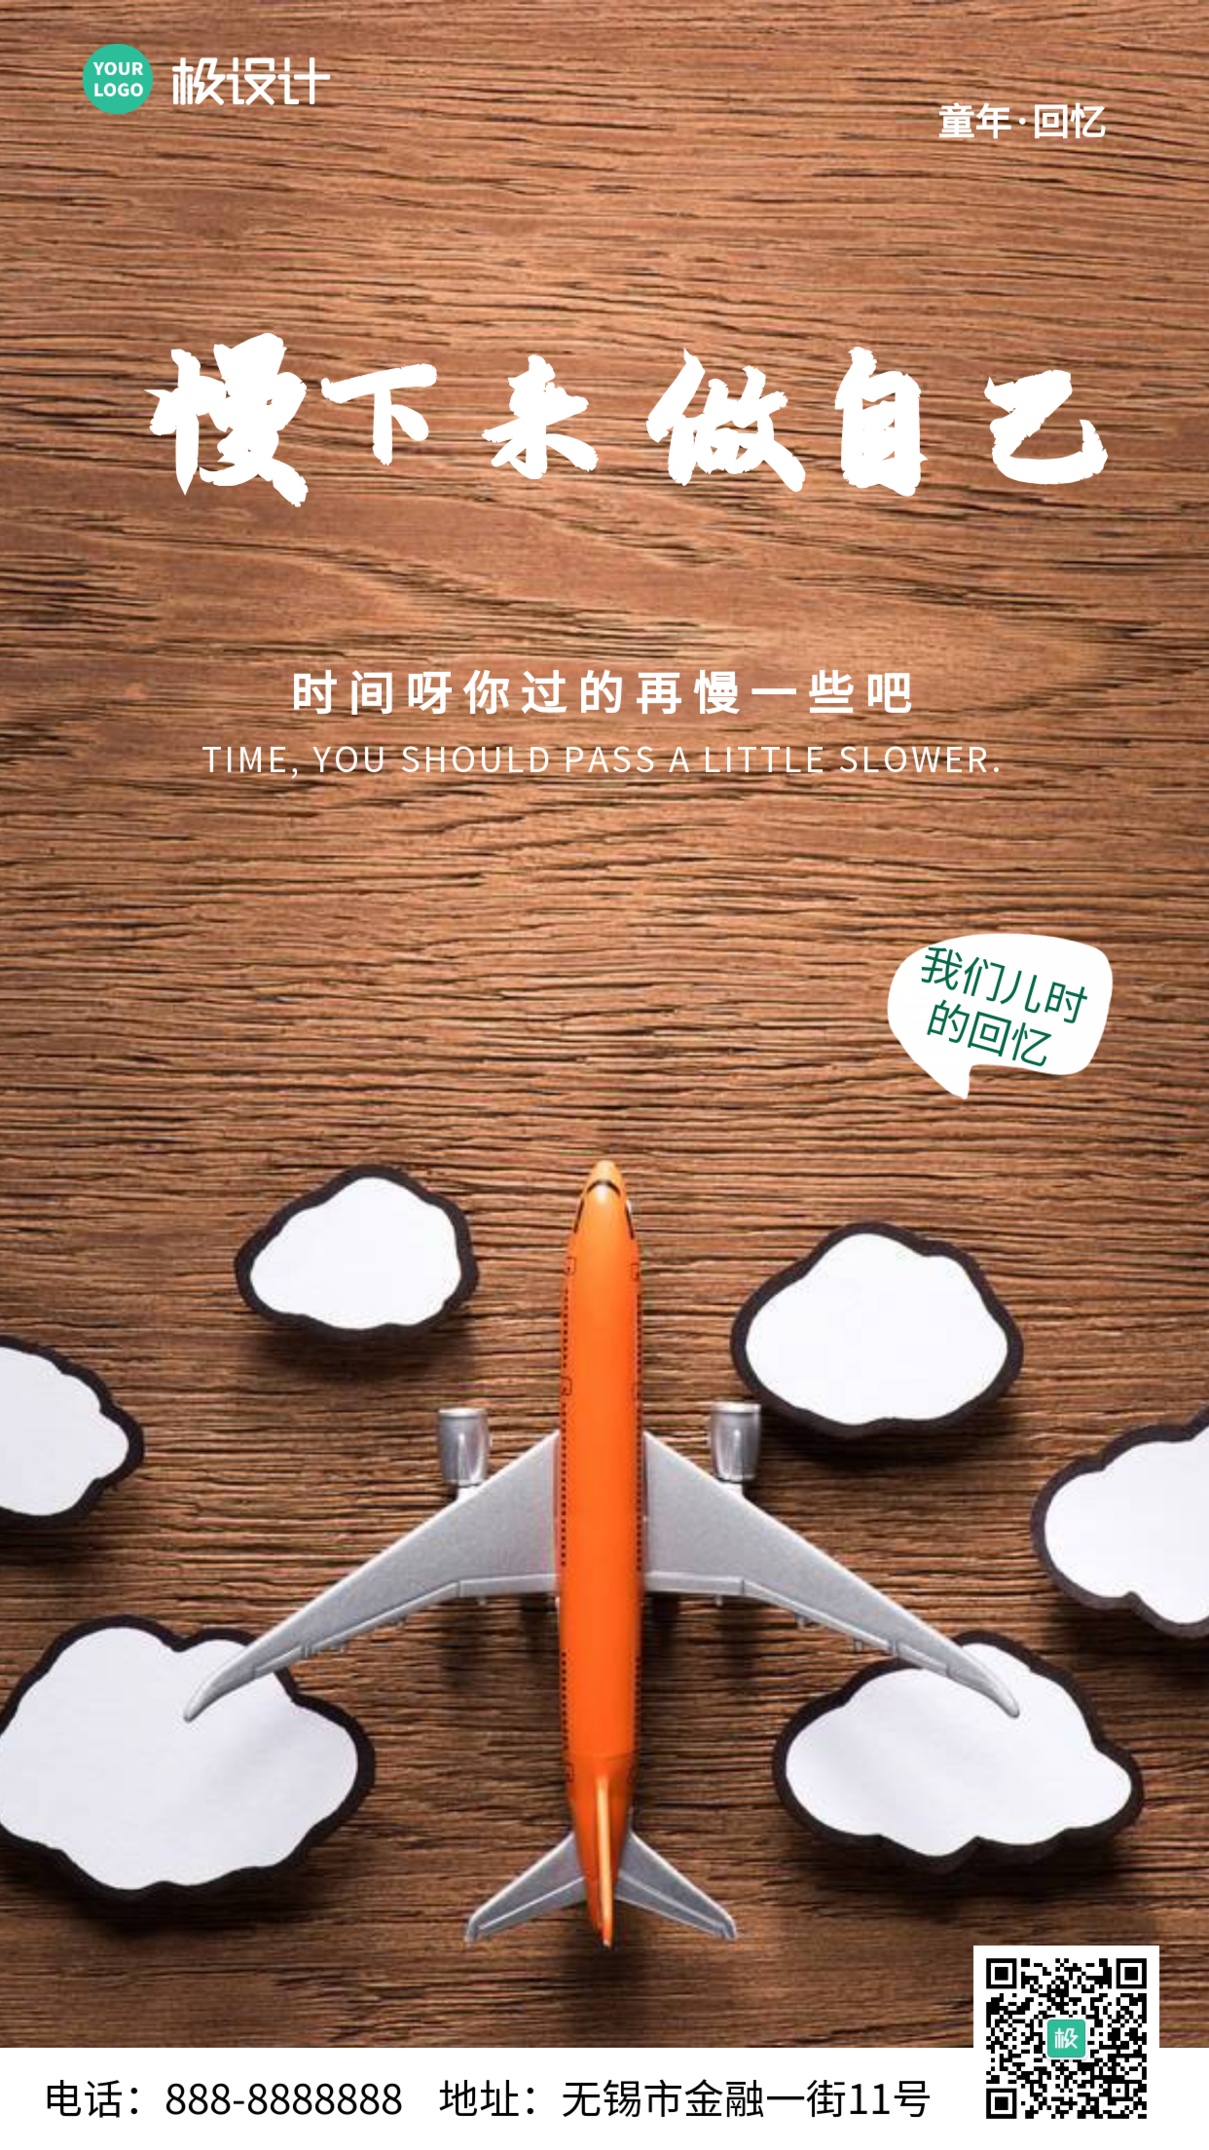 希望时间能过的慢点玩具飞机大气手机摄影图海报